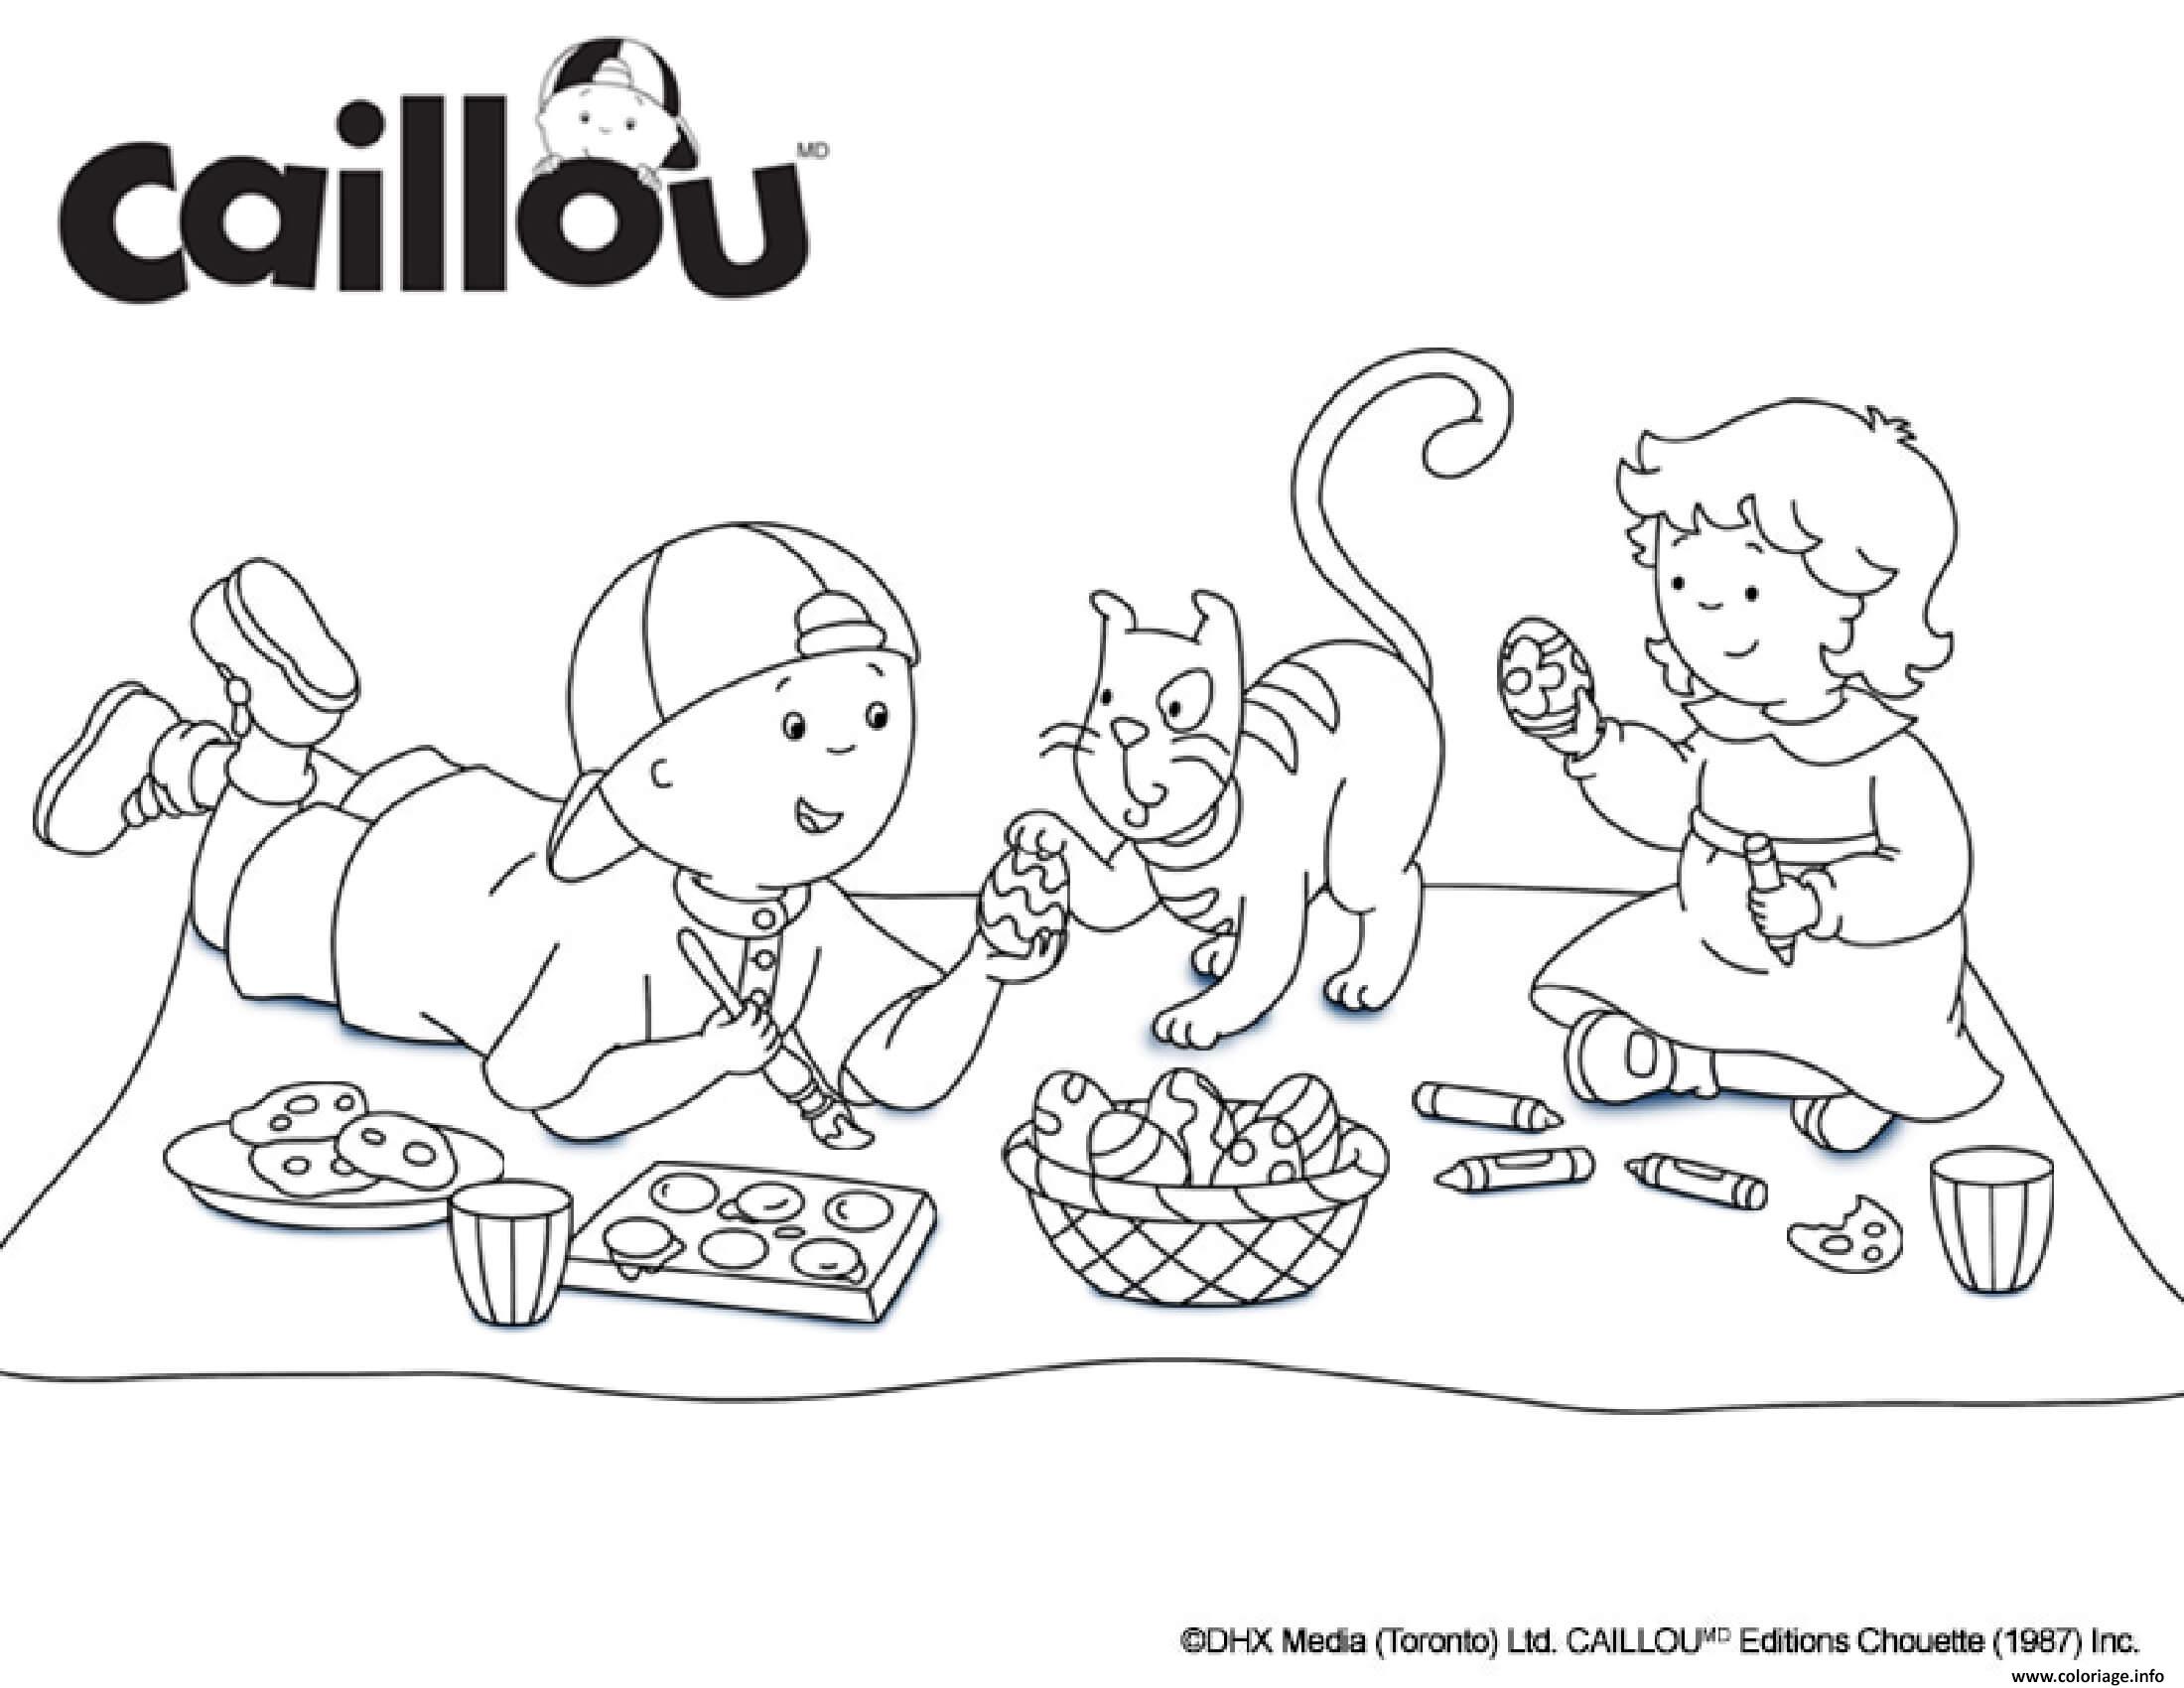 Dessin caillou mousseline et gilbert le chat preparent des oeufs de paques Coloriage Gratuit à Imprimer